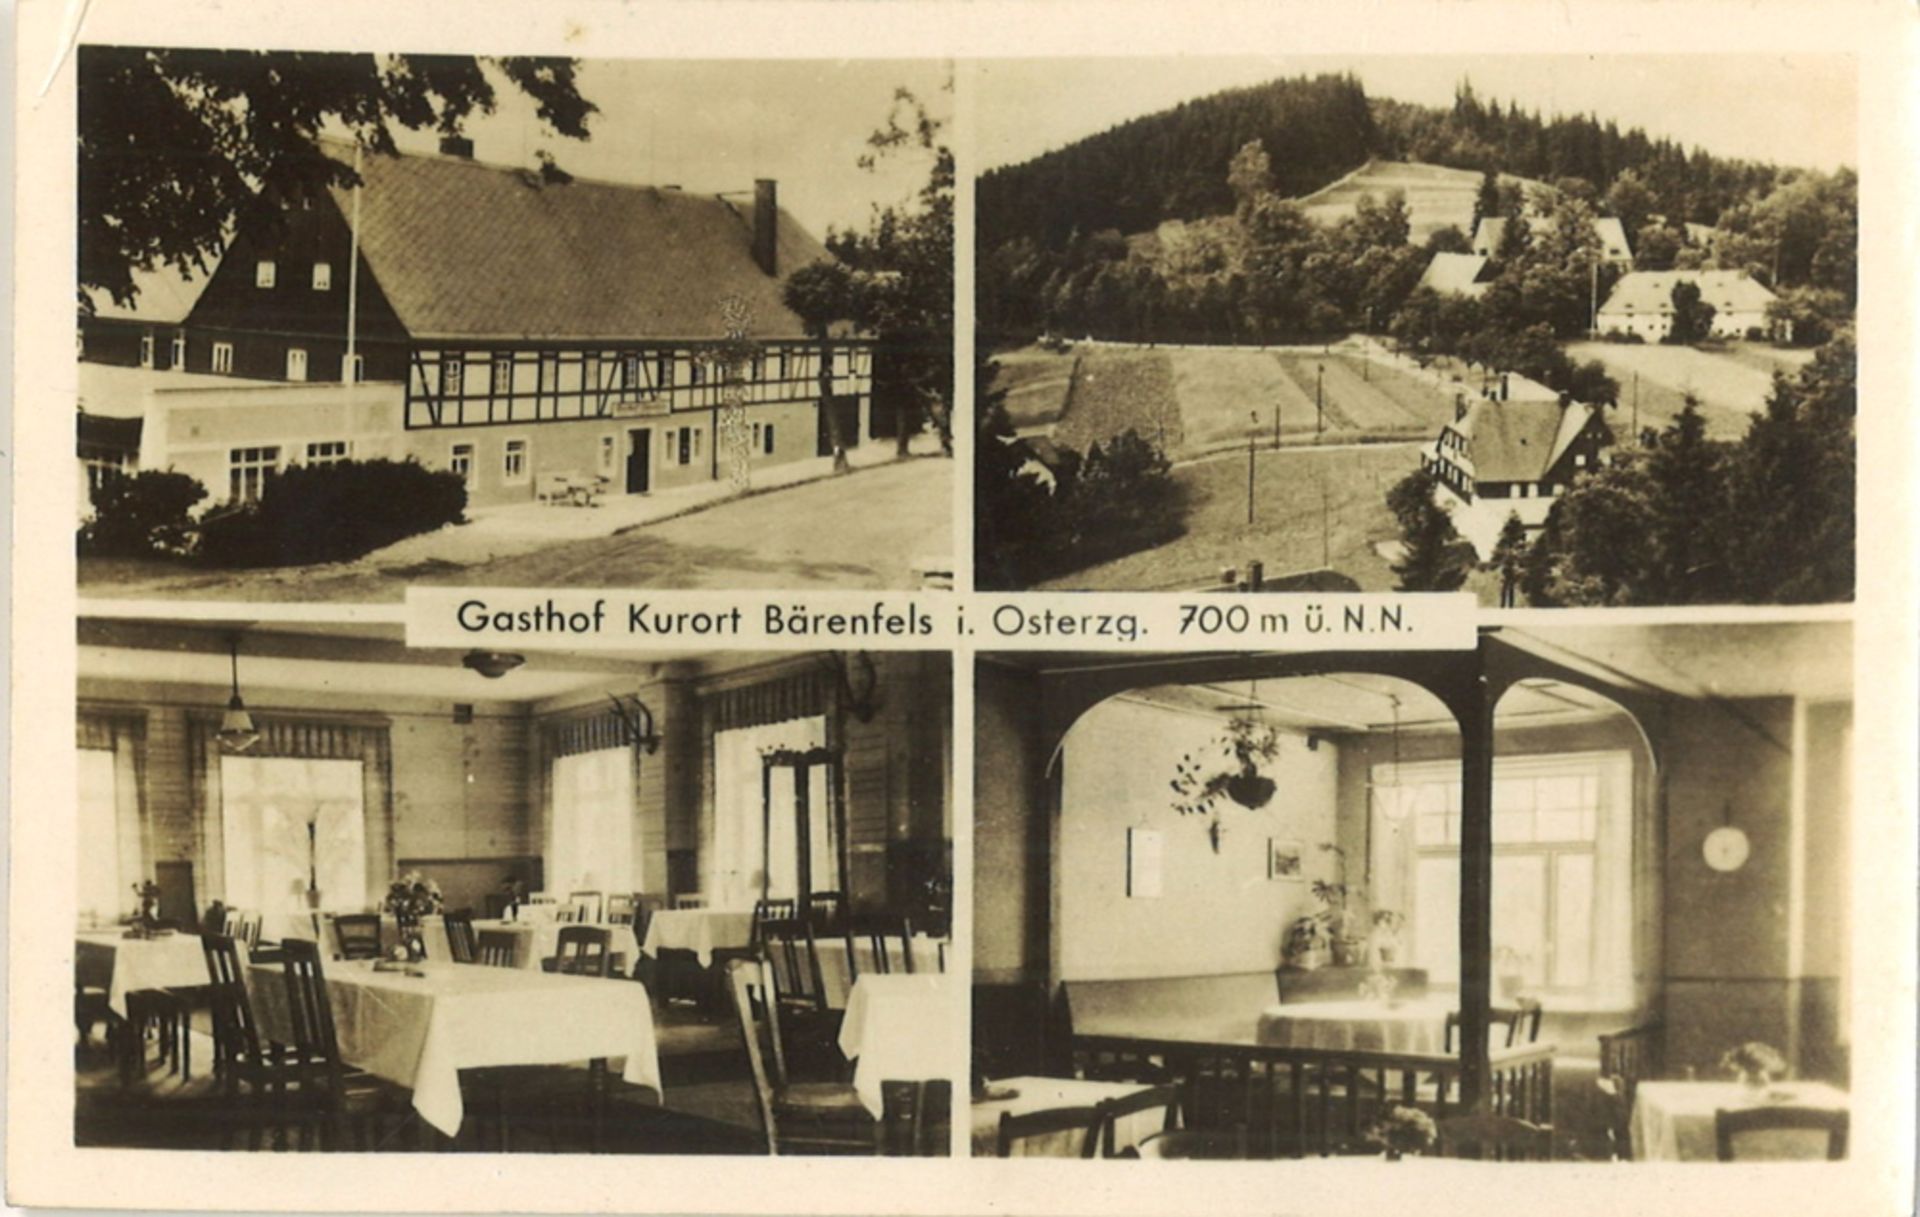 Postkarte "Gasthof Kurort Bärenfels i. Osterzg. 700 m ü. N.N." gelaufen